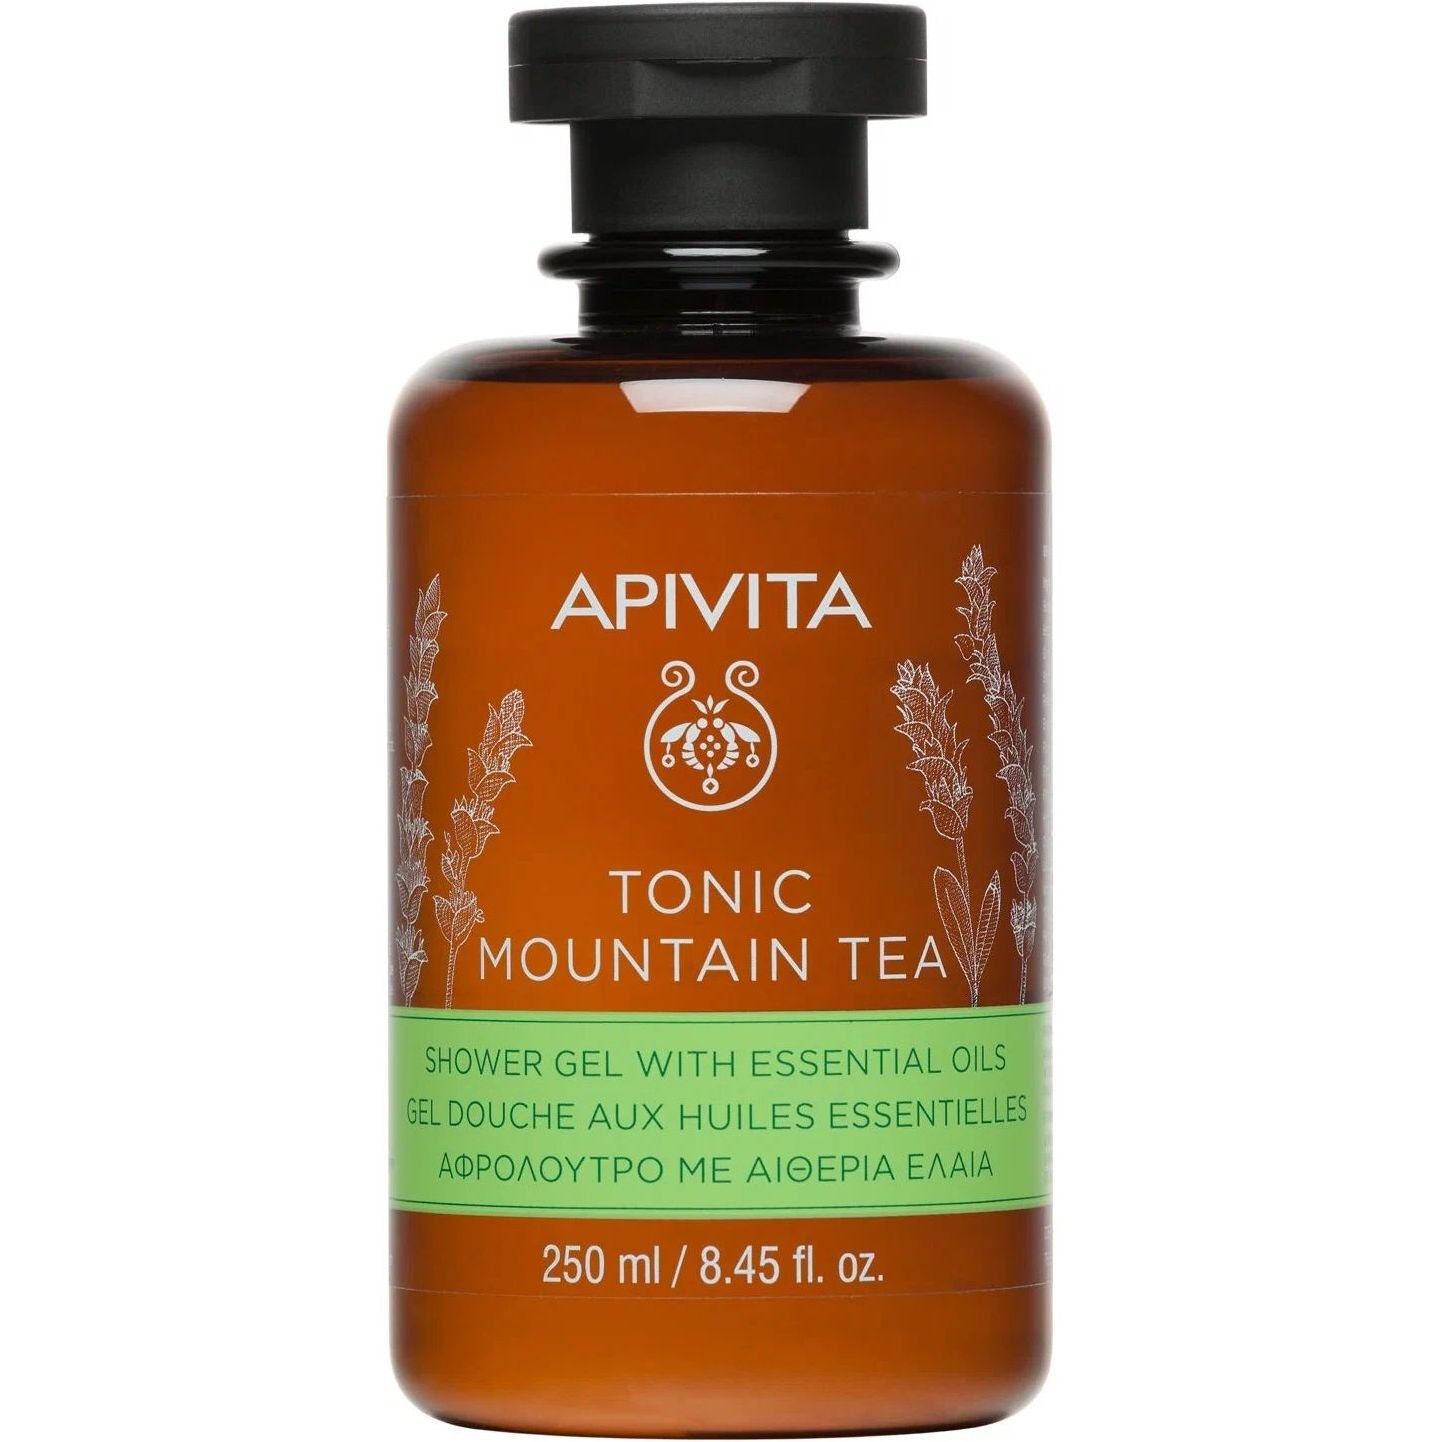 Гель для душа Apivita Tonic Mountain Tea с эфирными маслами, с горным чаем, 250 мл - фото 1